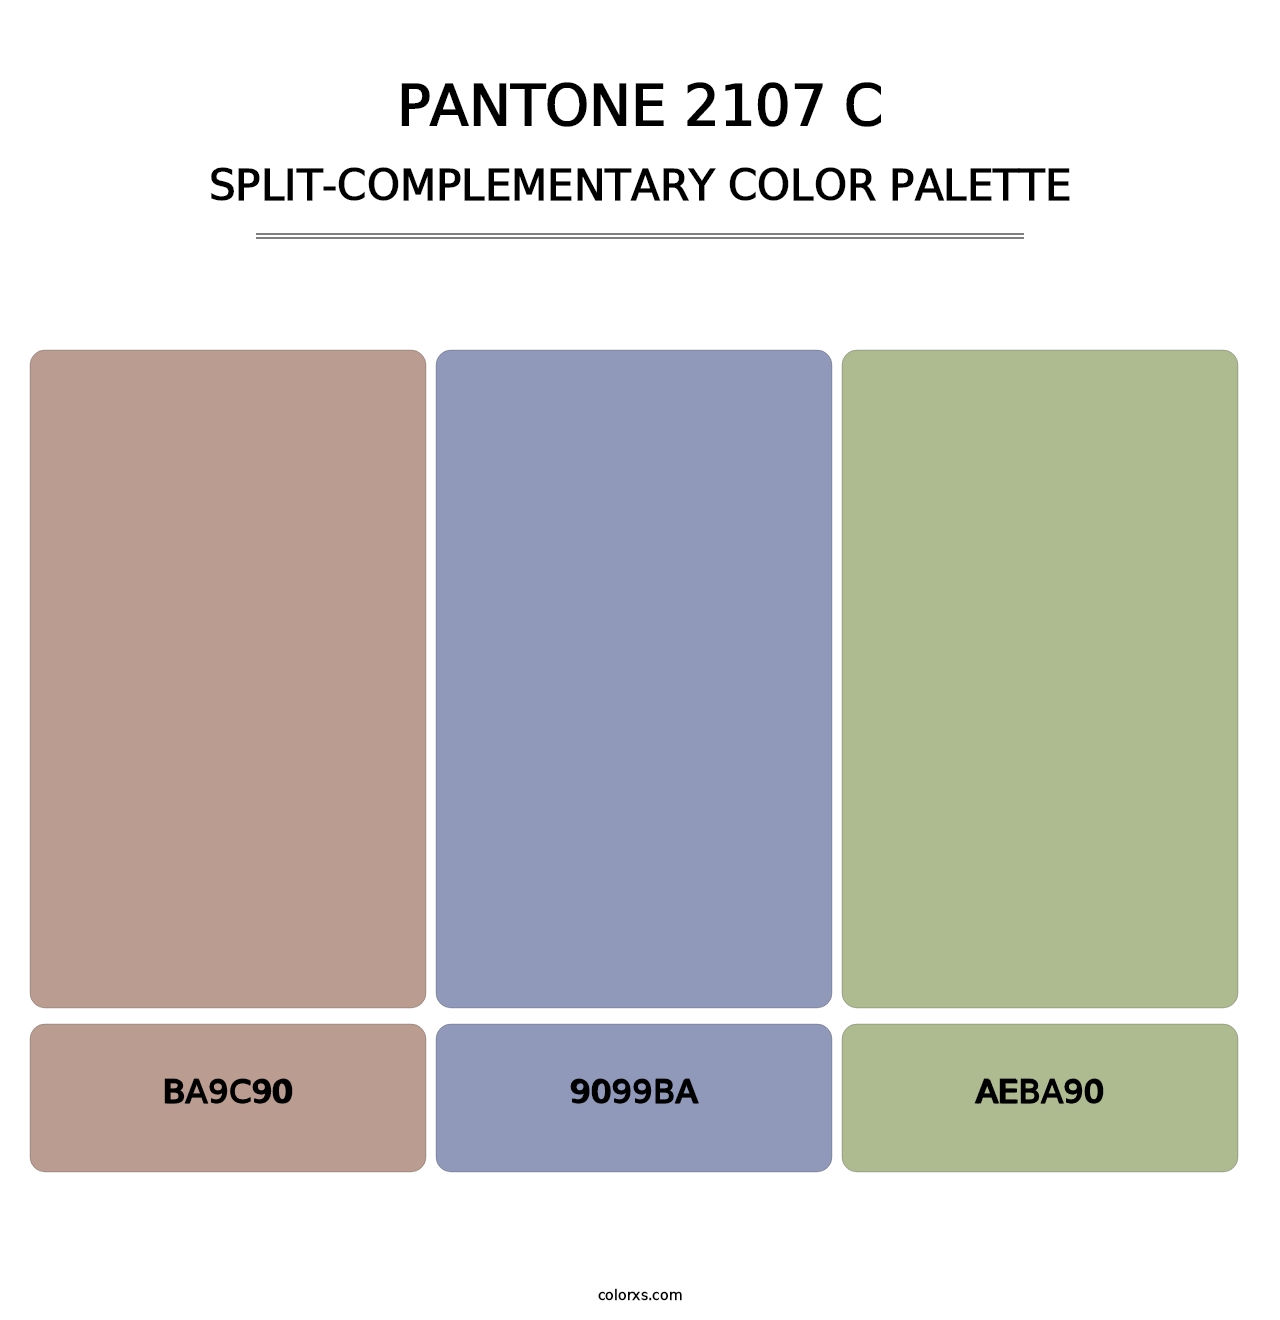 PANTONE 2107 C - Split-Complementary Color Palette